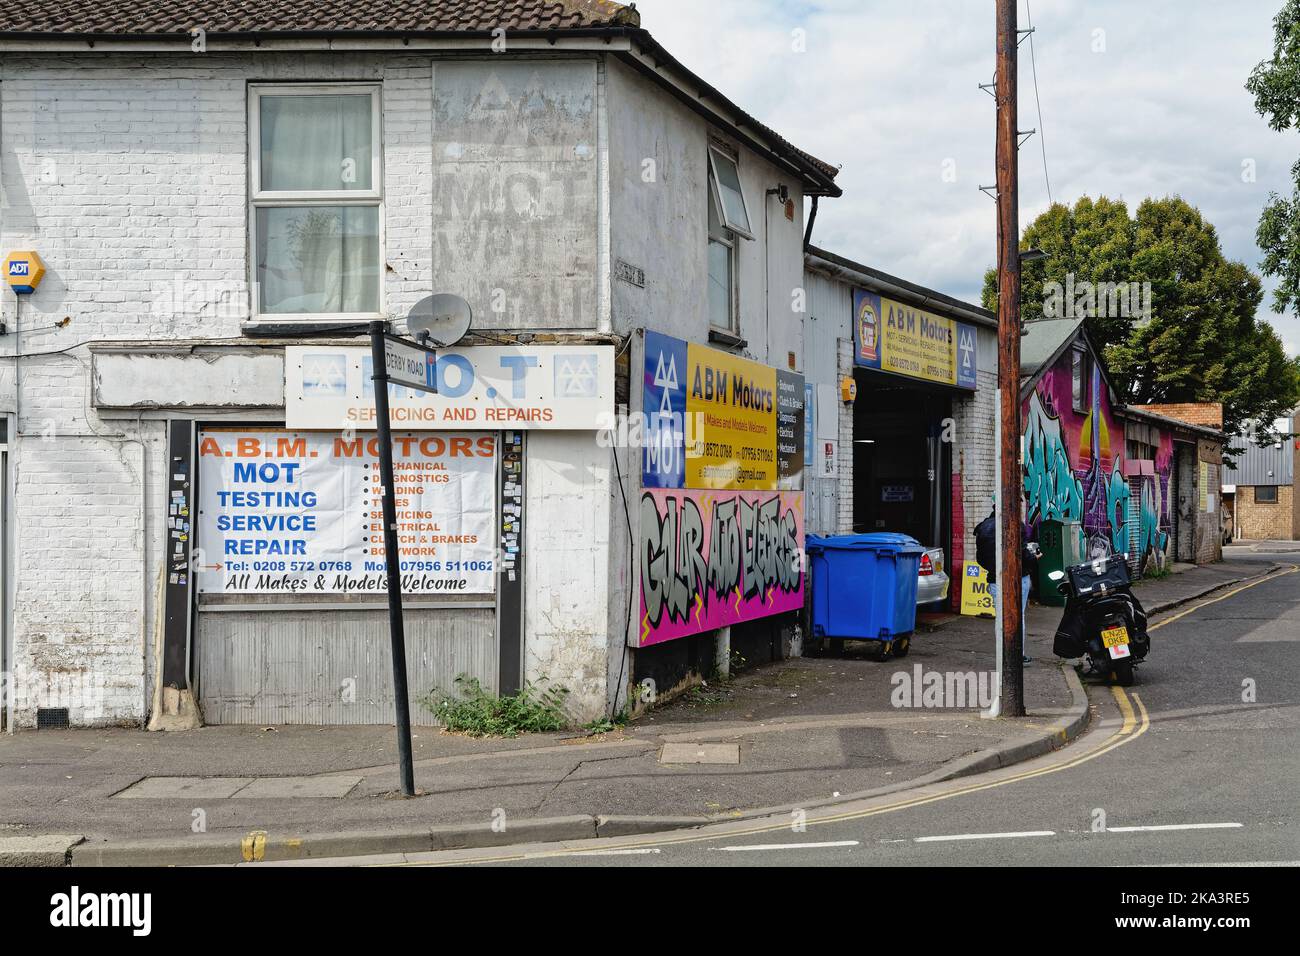 Un garage per la riparazione e la manutenzione di motori in strada a Hounslow West London Inghilterra Regno Unito Foto Stock